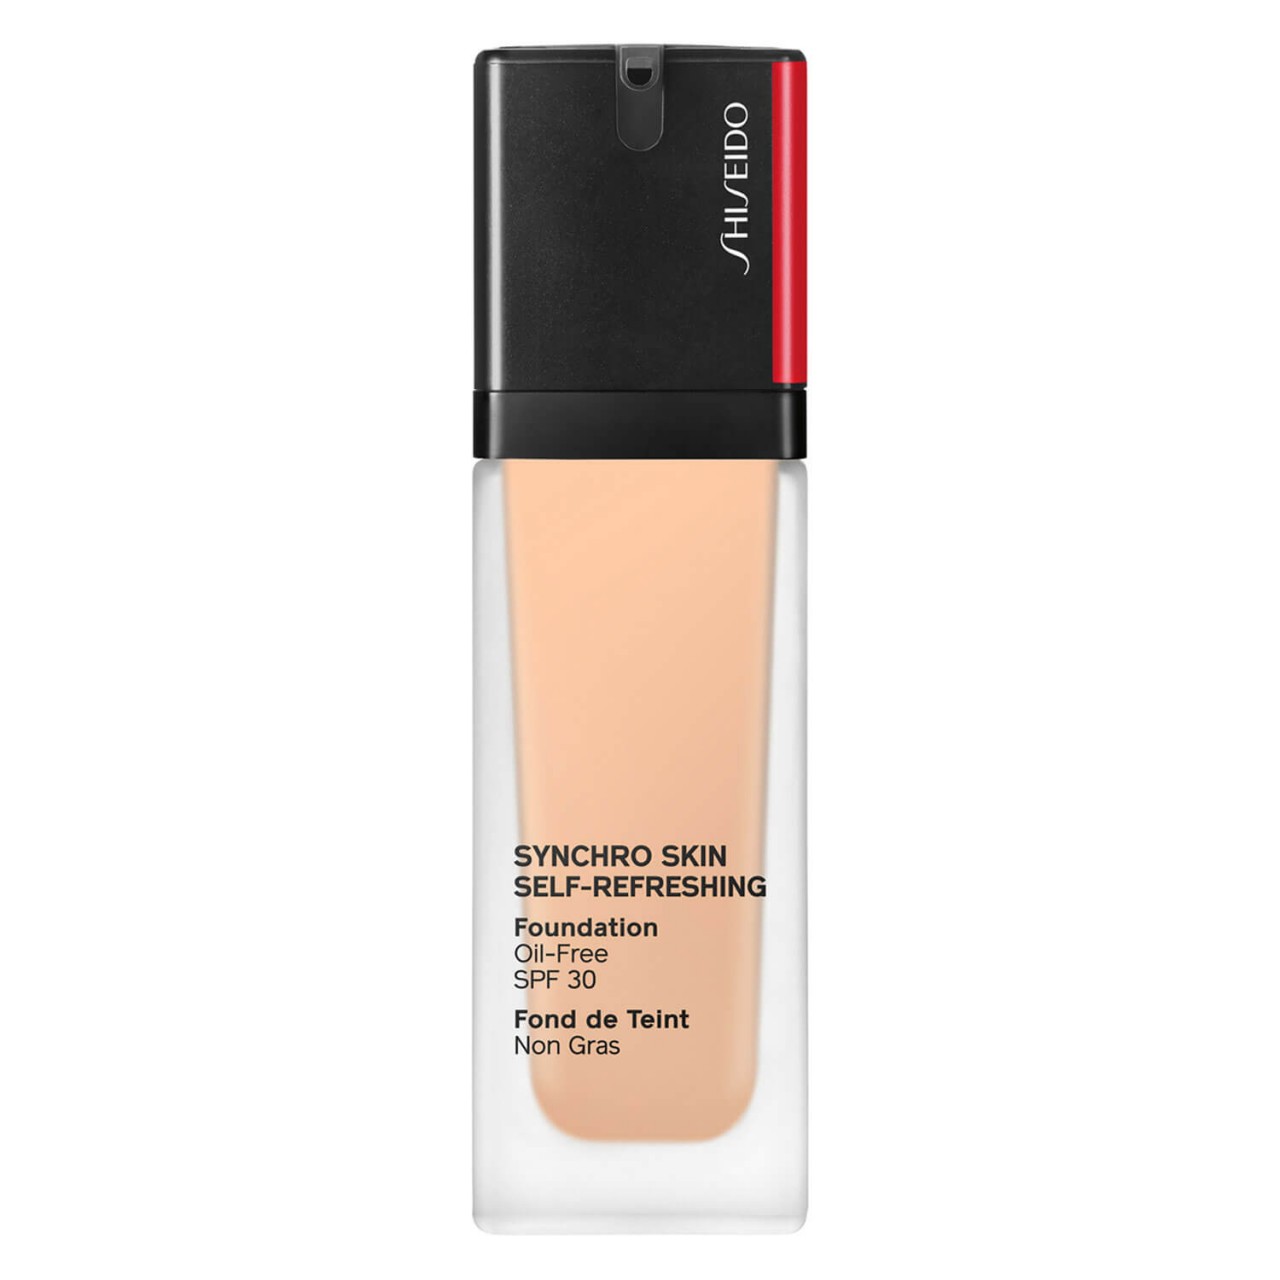 Synchro Skin Self-Refreshing - Foundation SPF 30 Lace 150 von Shiseido